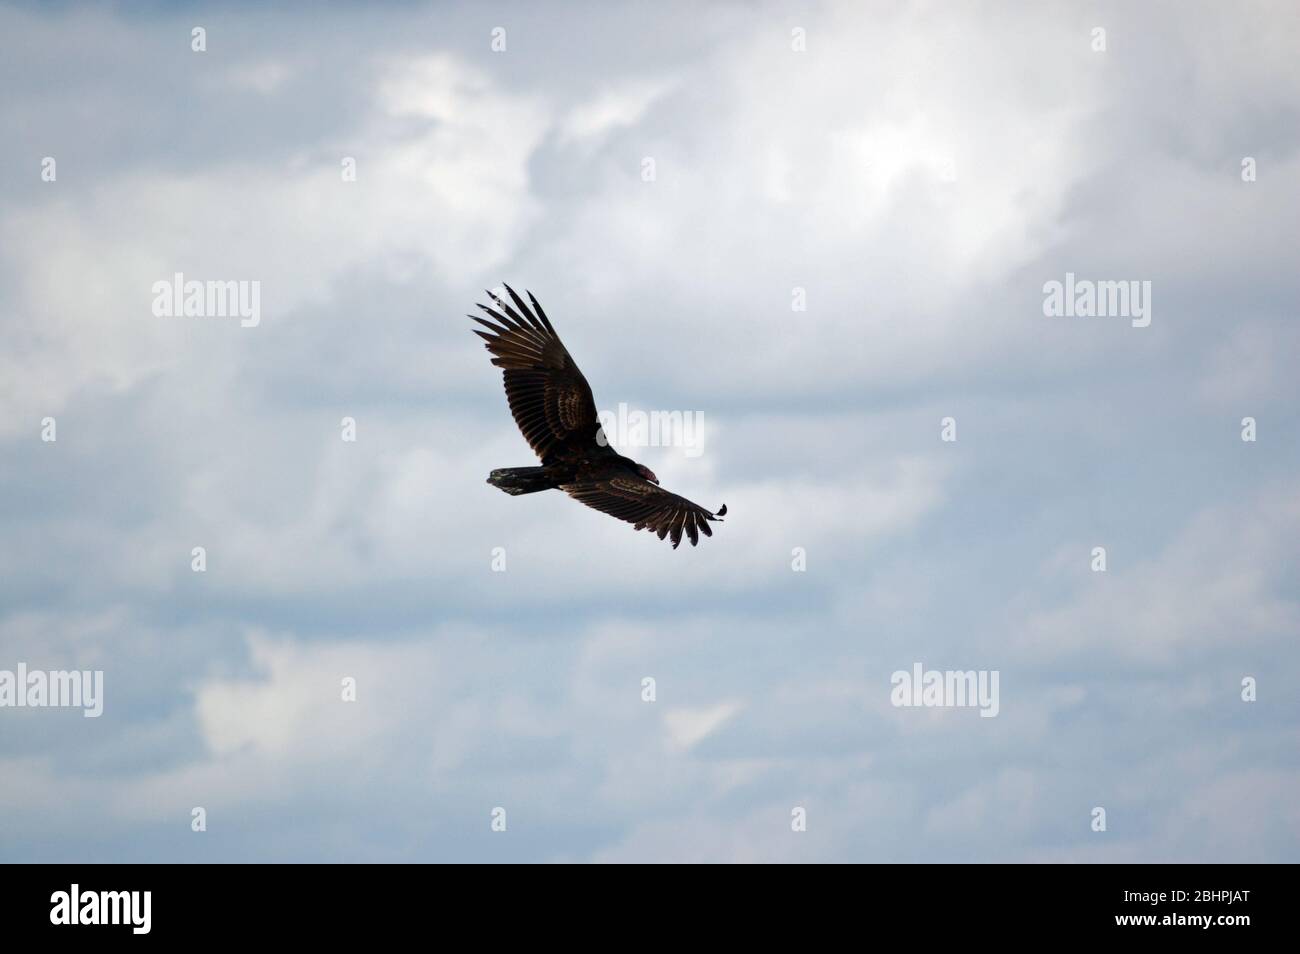 View looking down on a turkey vulture in flight in Havana, Cuba. Stock Photo